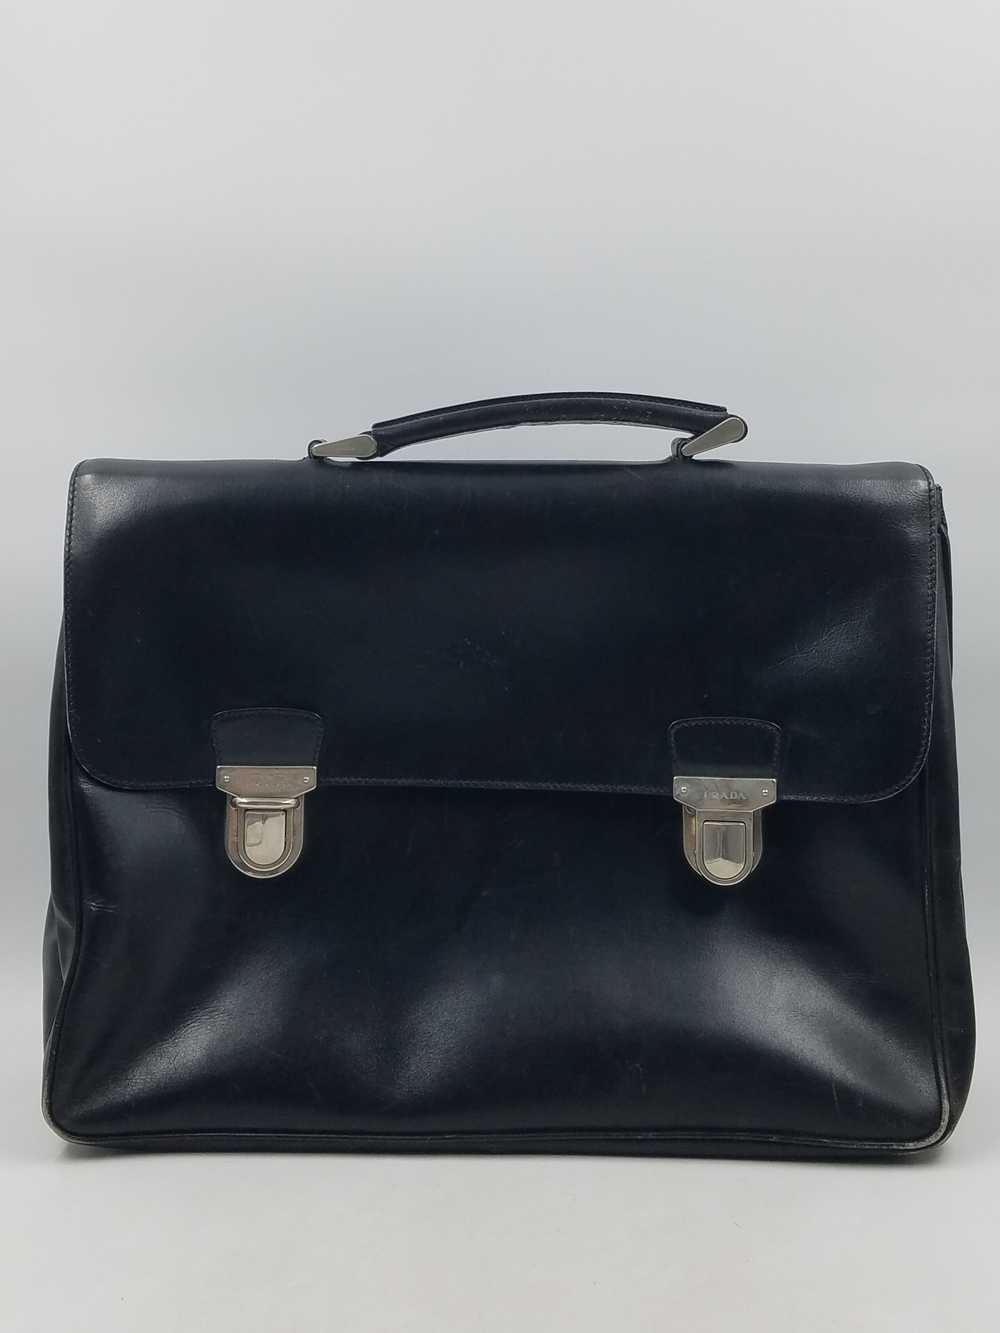 Authentic Prada Black Leather Briefcase - image 1